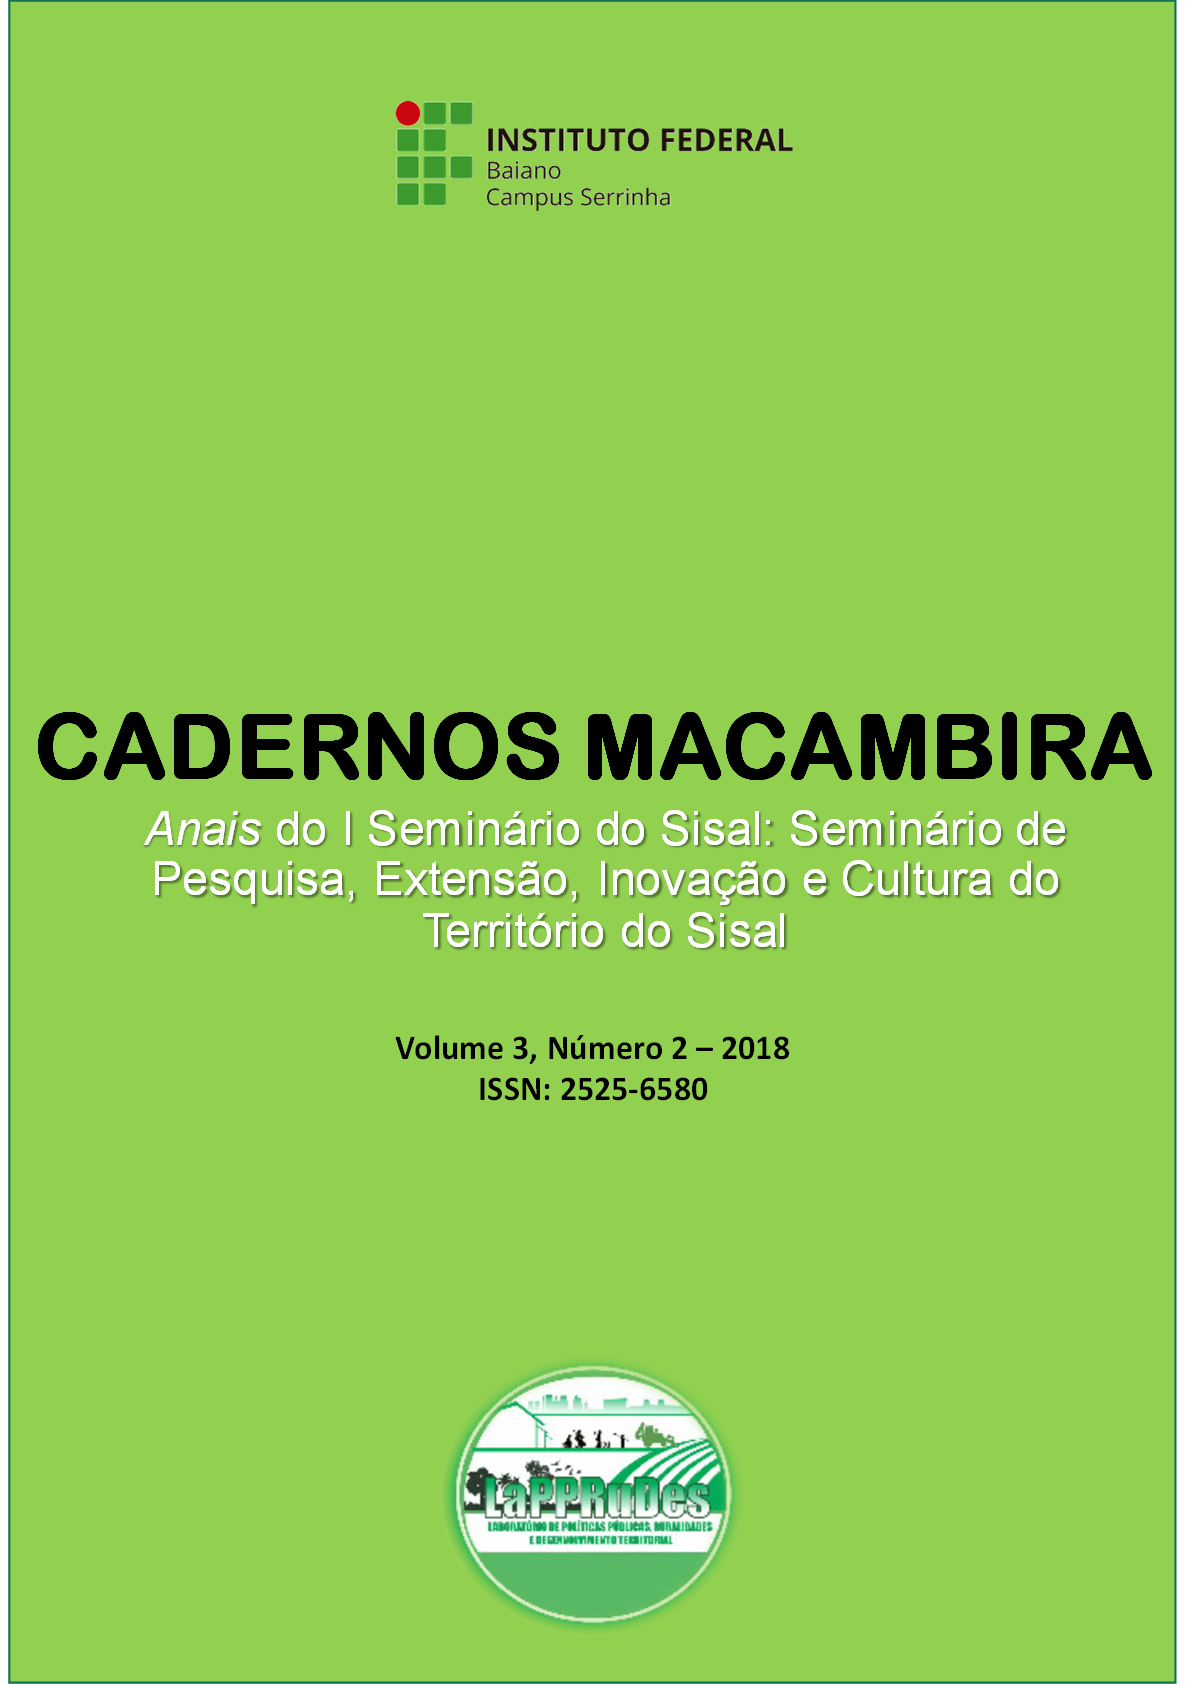 					Ver Vol. 3 Núm. 2 (2018): Cadernos Macambira: Anais do I Seminário de pesquisa, extensão, inovação e cultura do Território do Sisal
				